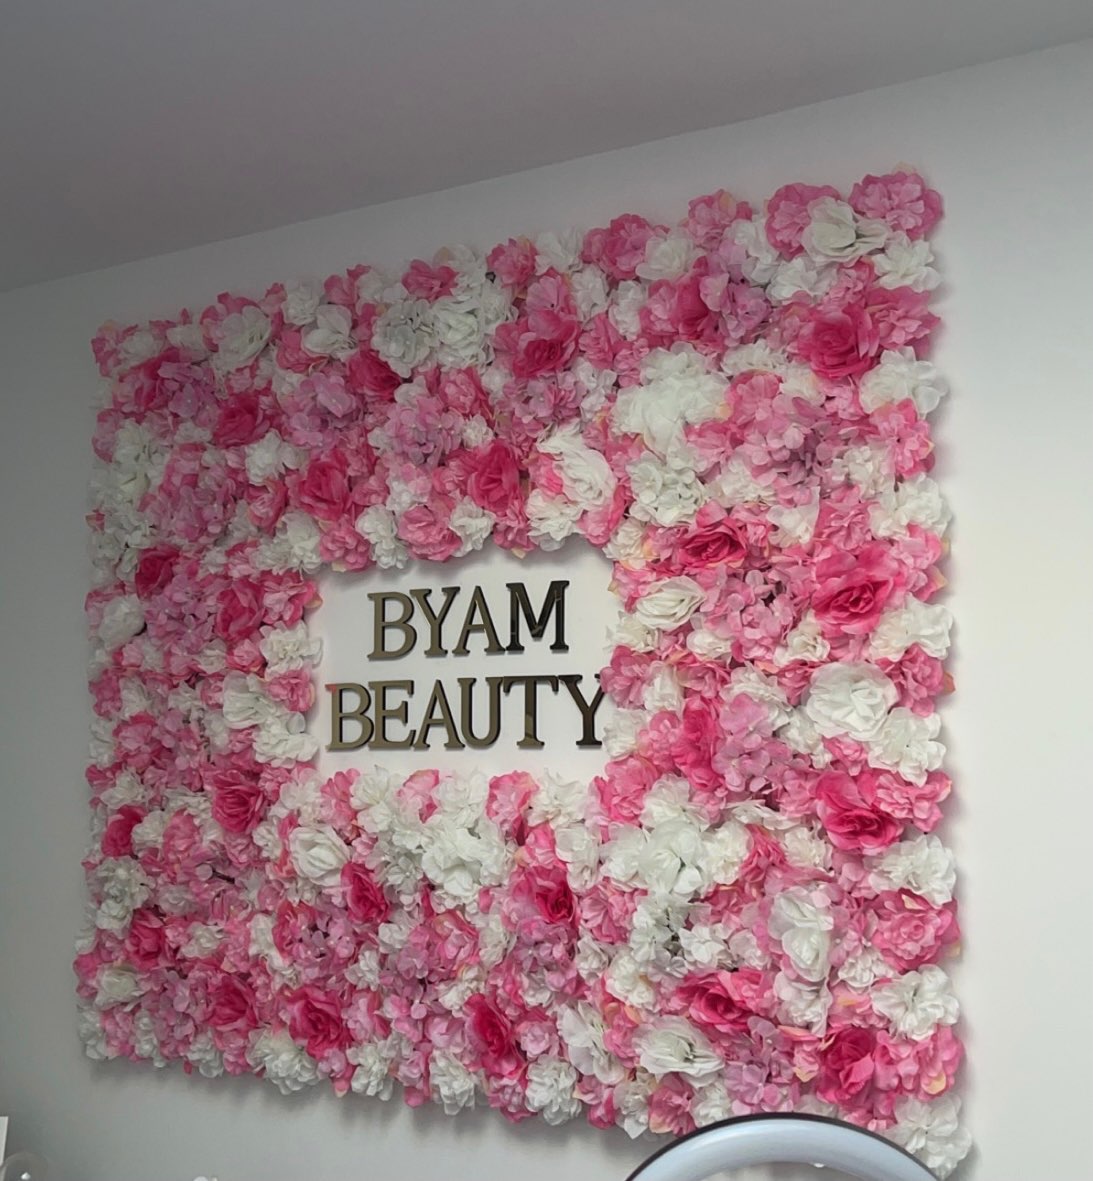 Panneaux-muraux-de-fleurs-artificielles-roses-romantiques-pour-d-cor-de-f-te-d-anniversaire-de